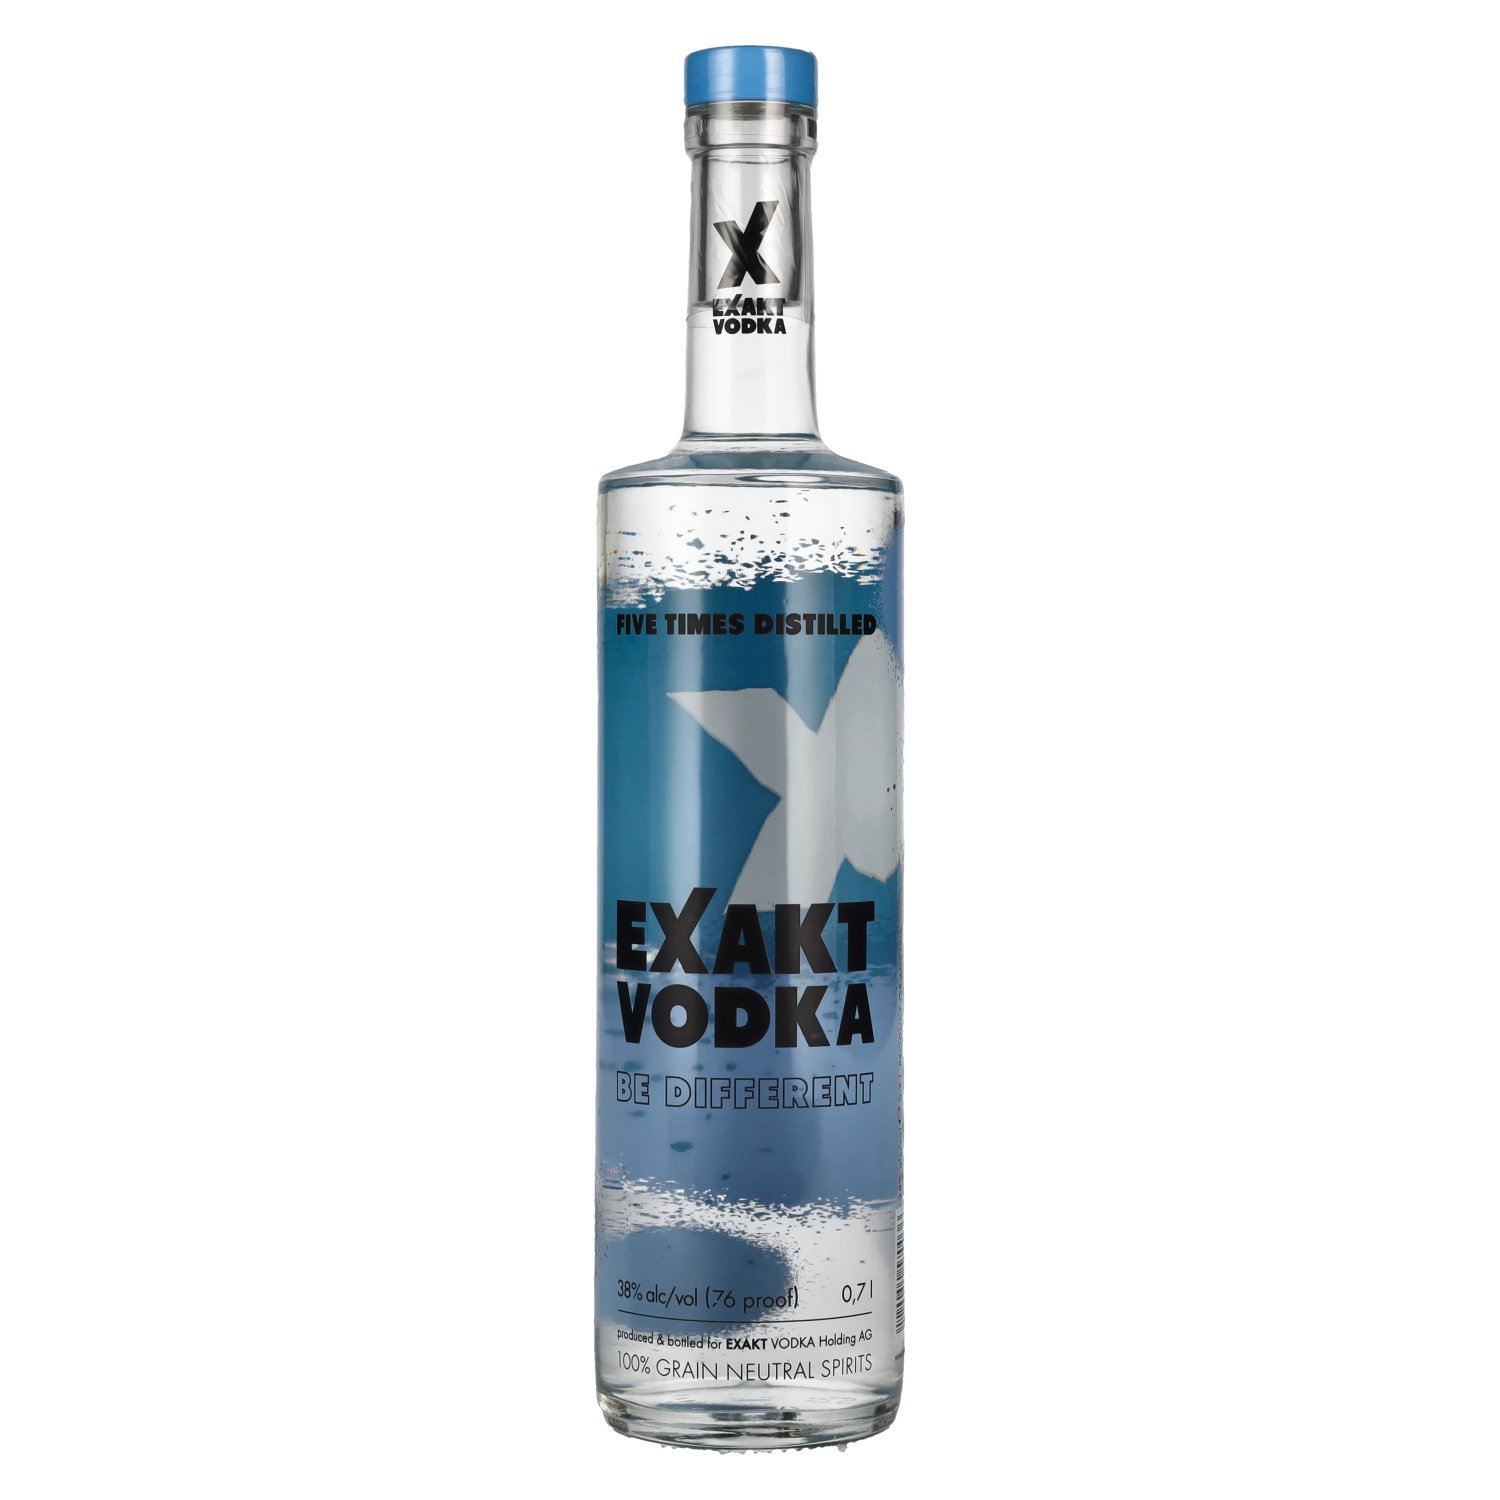 Exakt delicando - Vodka Vol. 38% 0,7l